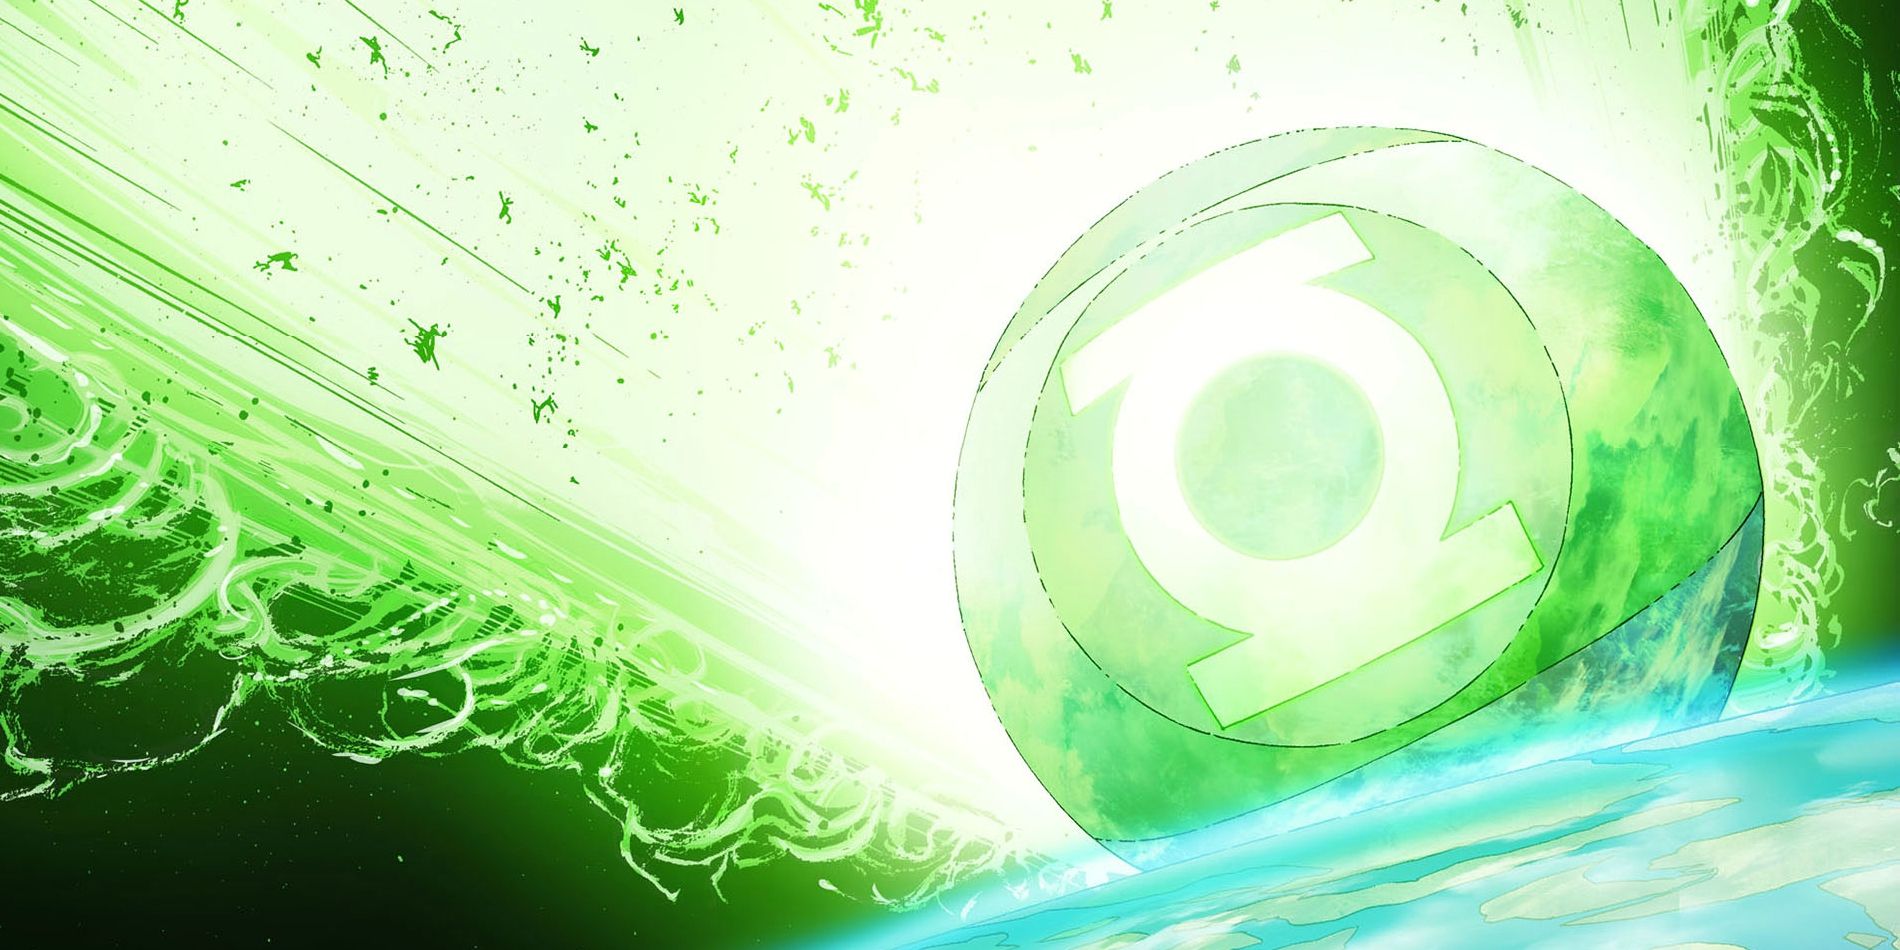 Green Lantern Mogo The Living Planet